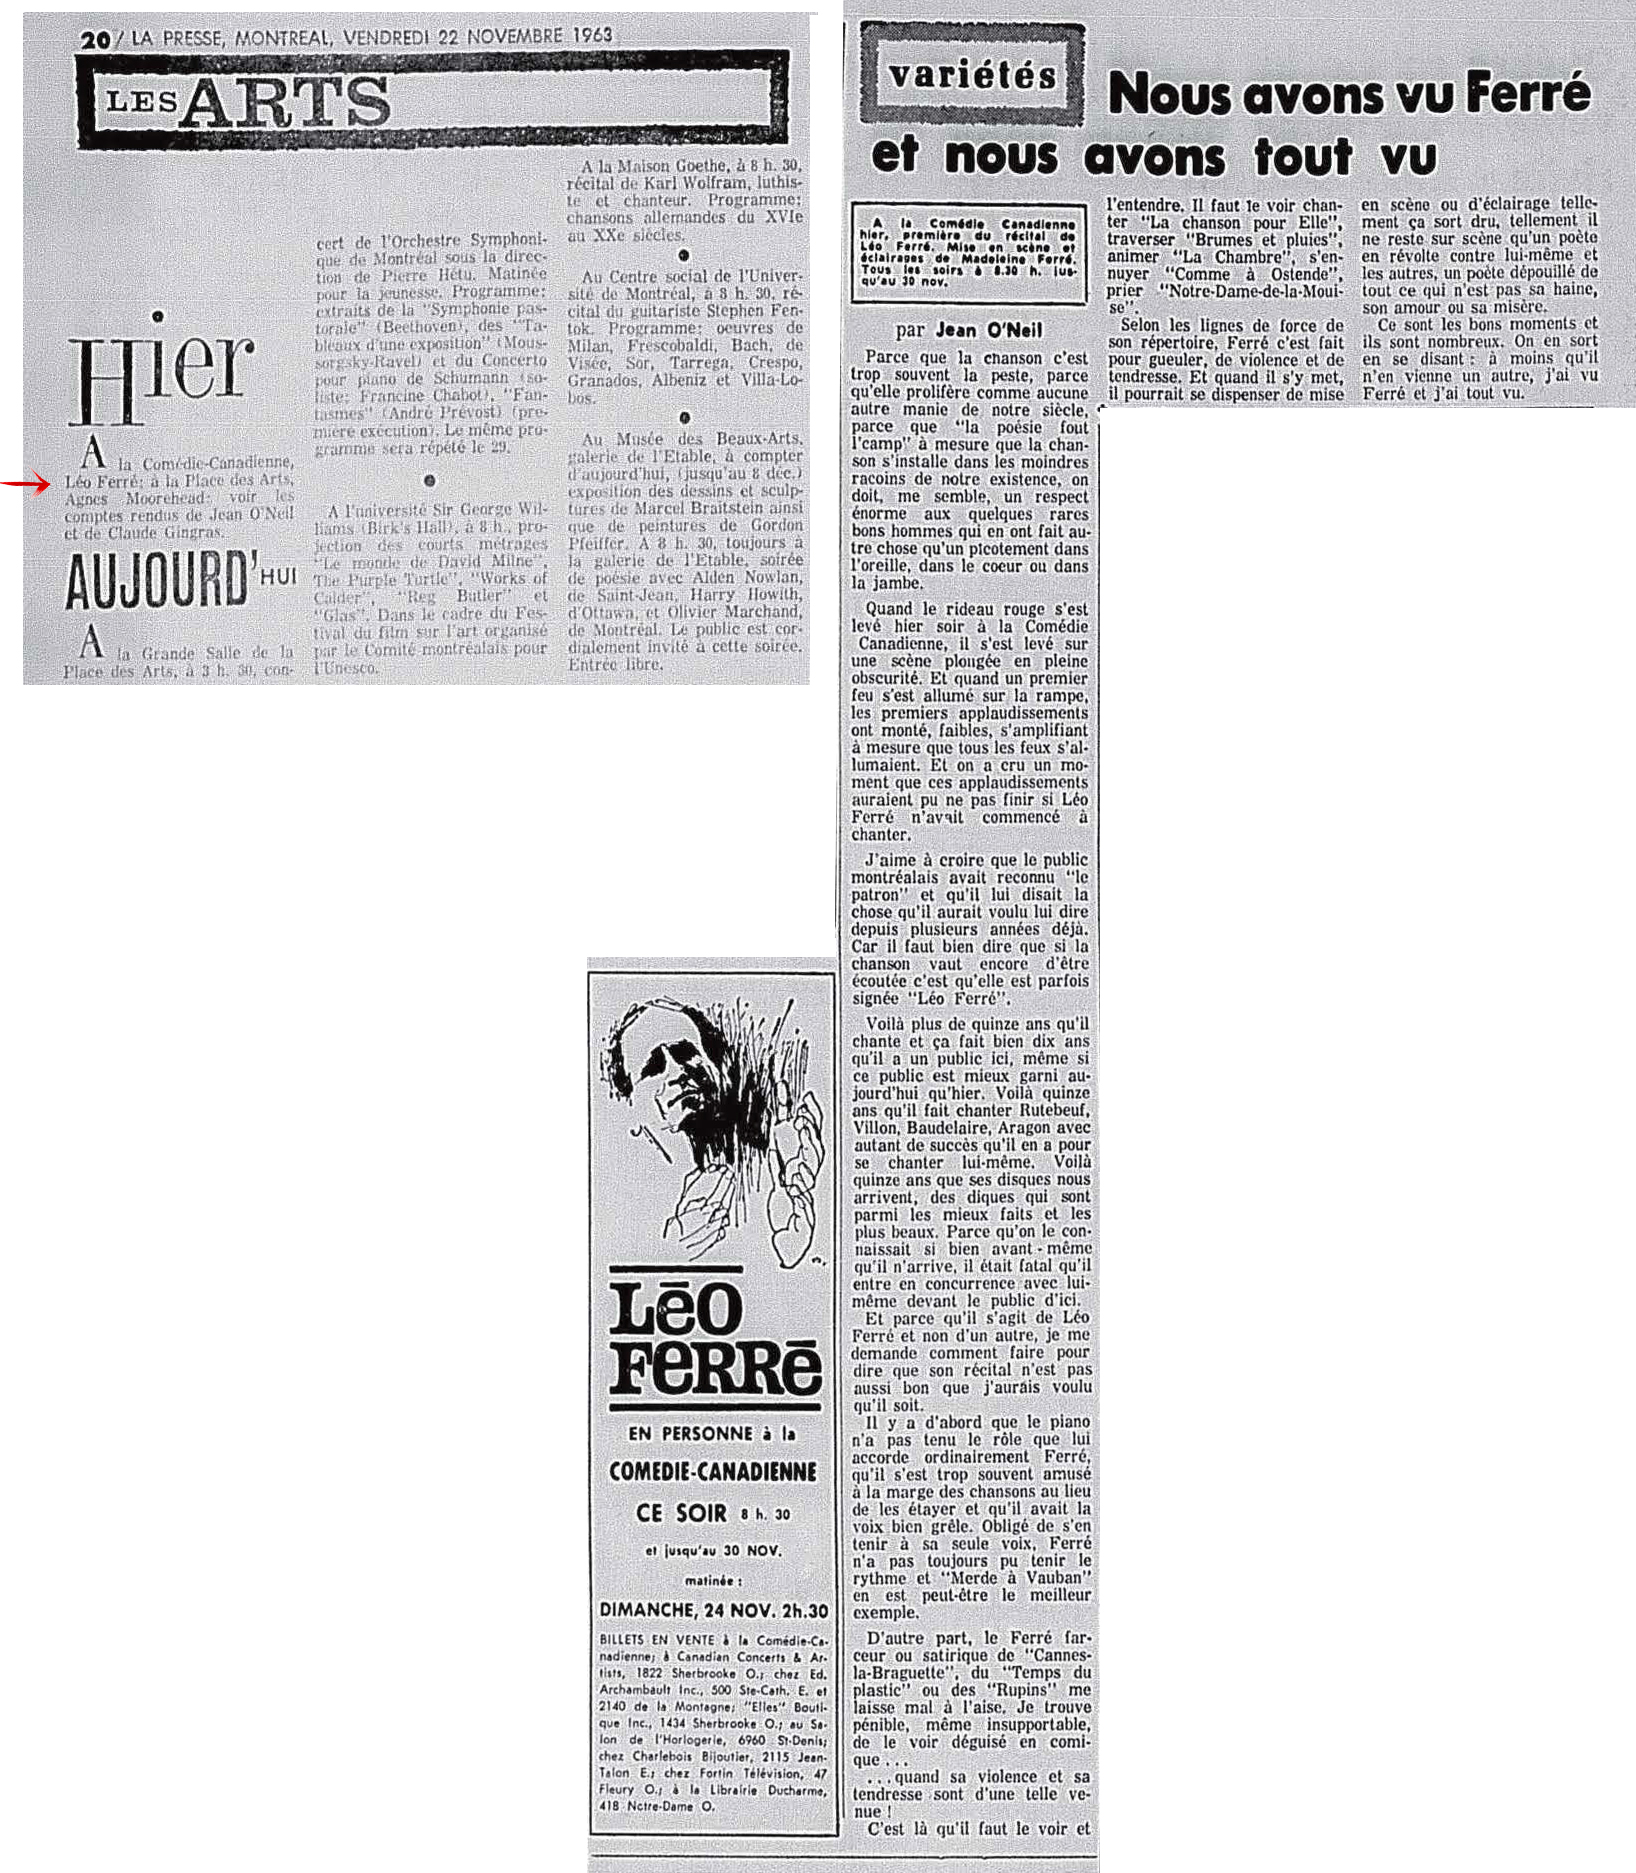 Léo Ferré - La presse, 1884- (Montréal), vendredi 22 novembre 1963